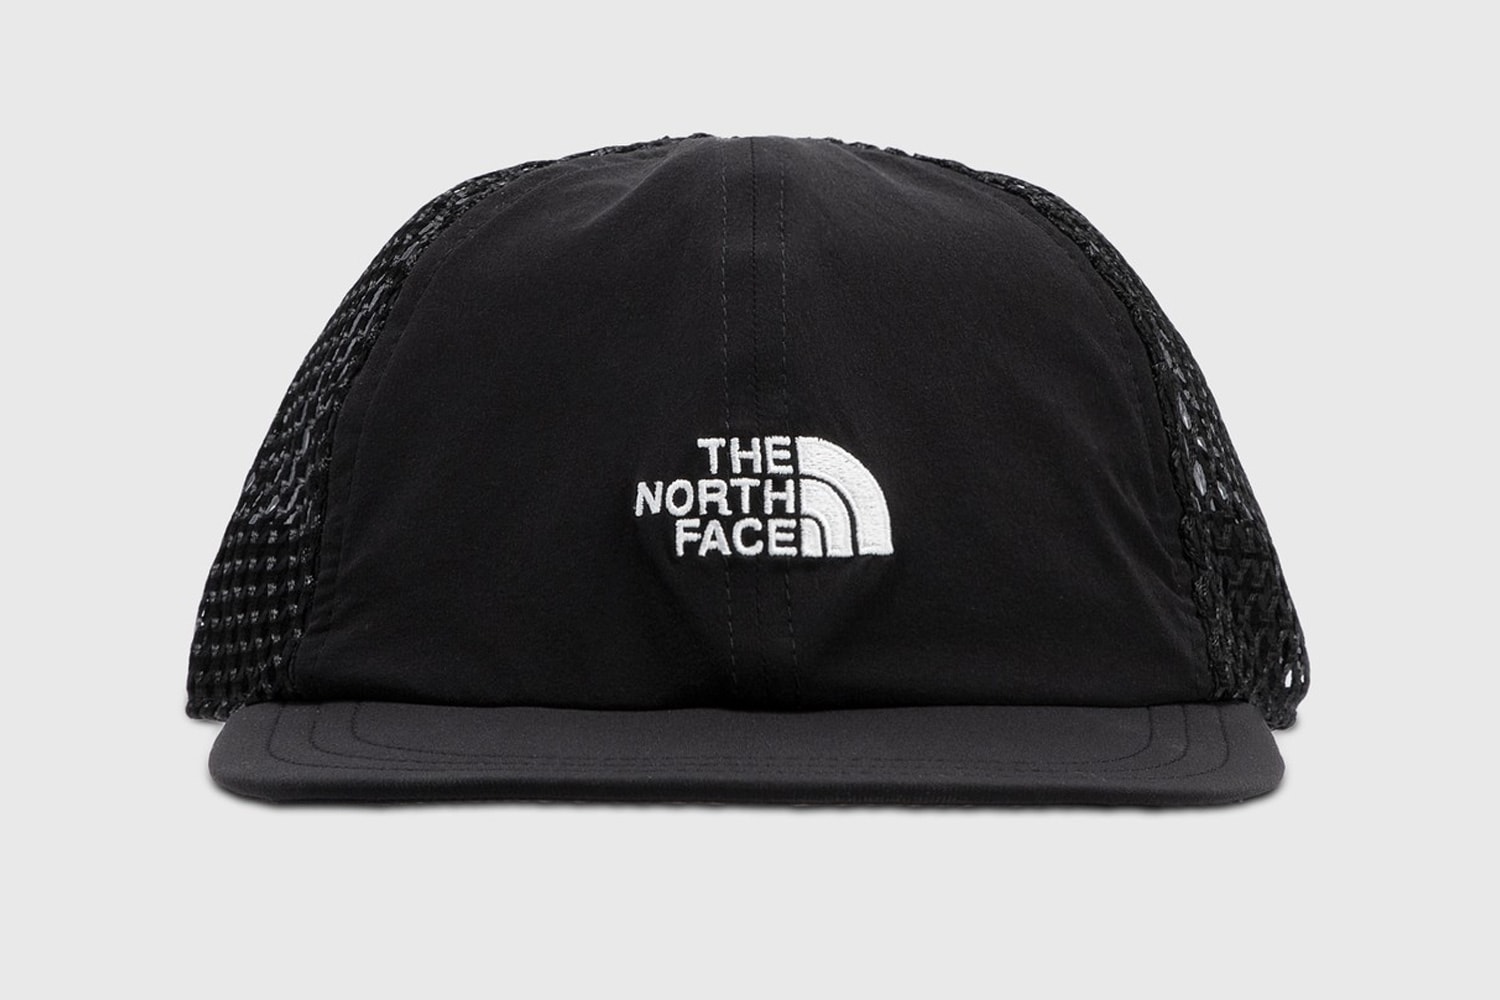 嚴選 sacai、WISDOM®、The North Face 與 Stüssy 等品牌「最新帽款」入手推薦